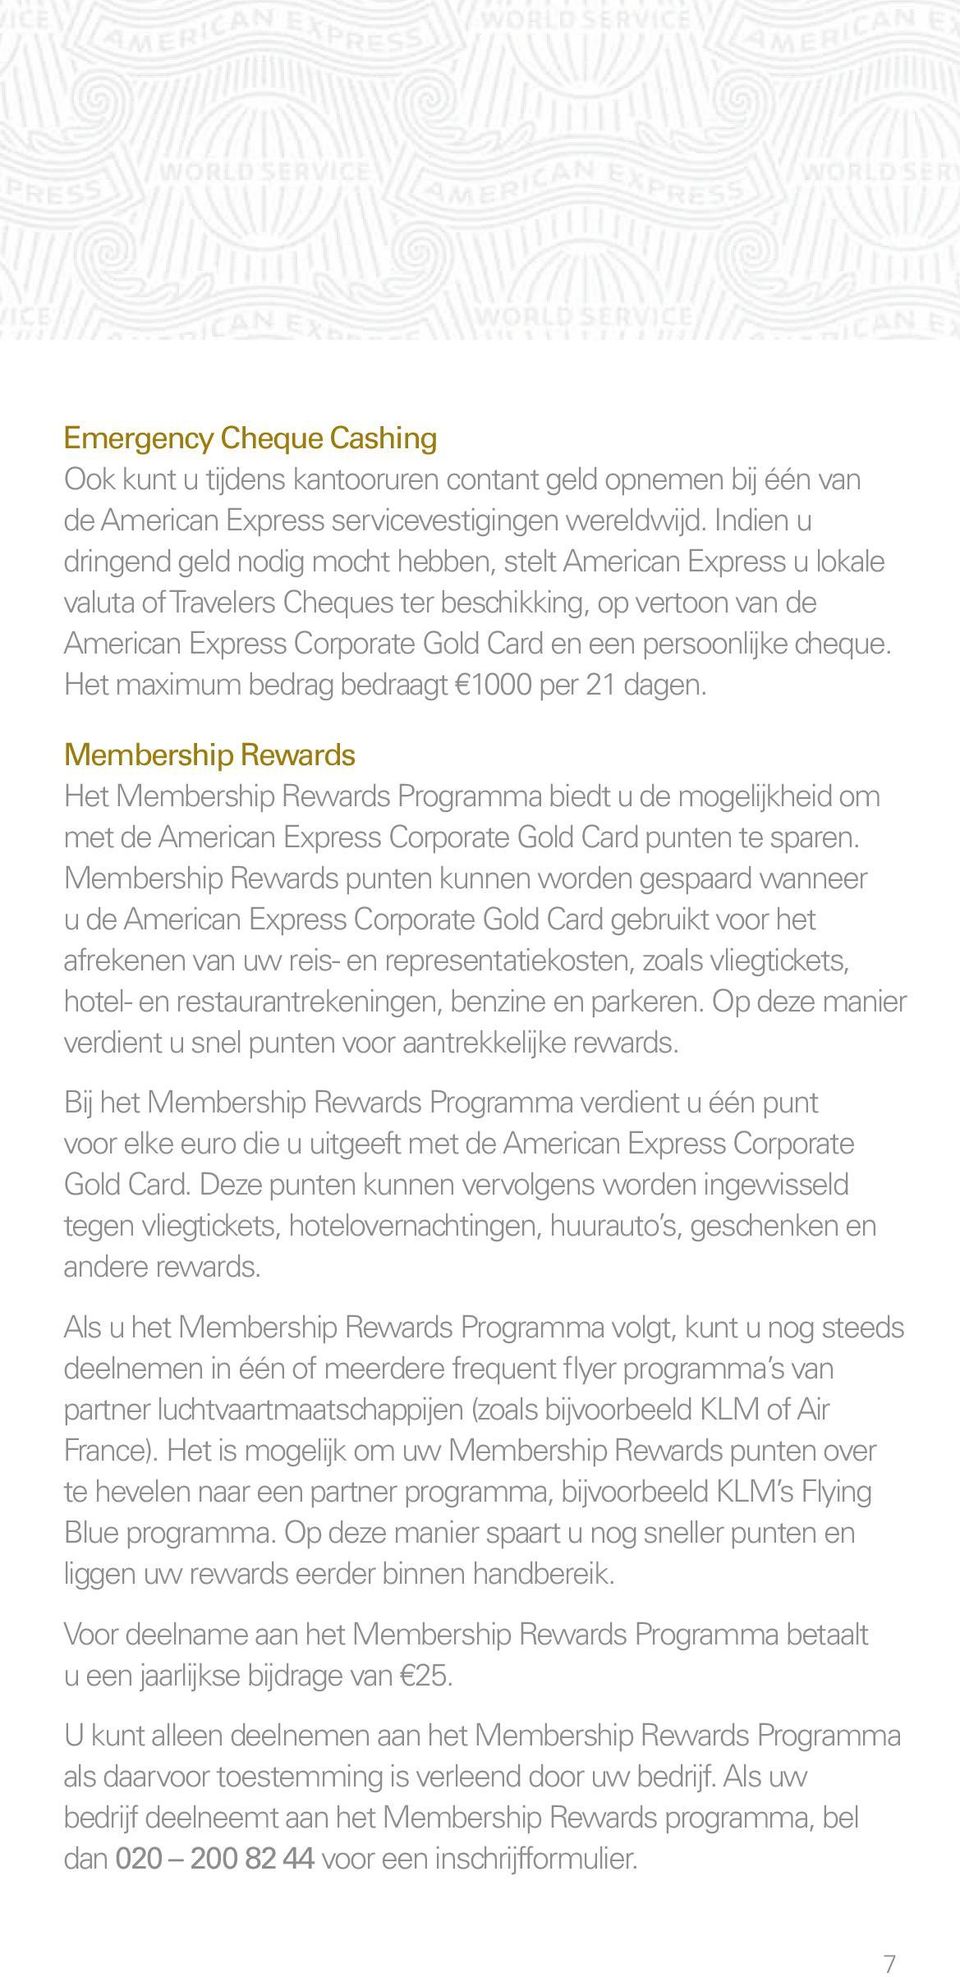 cheque. Het maximum bedrag bedraagt 1000 per 21 dagen. Membership Rewards Het Membership Rewards Programma biedt u de mogelijkheid om met de American Express Corporate Gold Card punten te sparen.